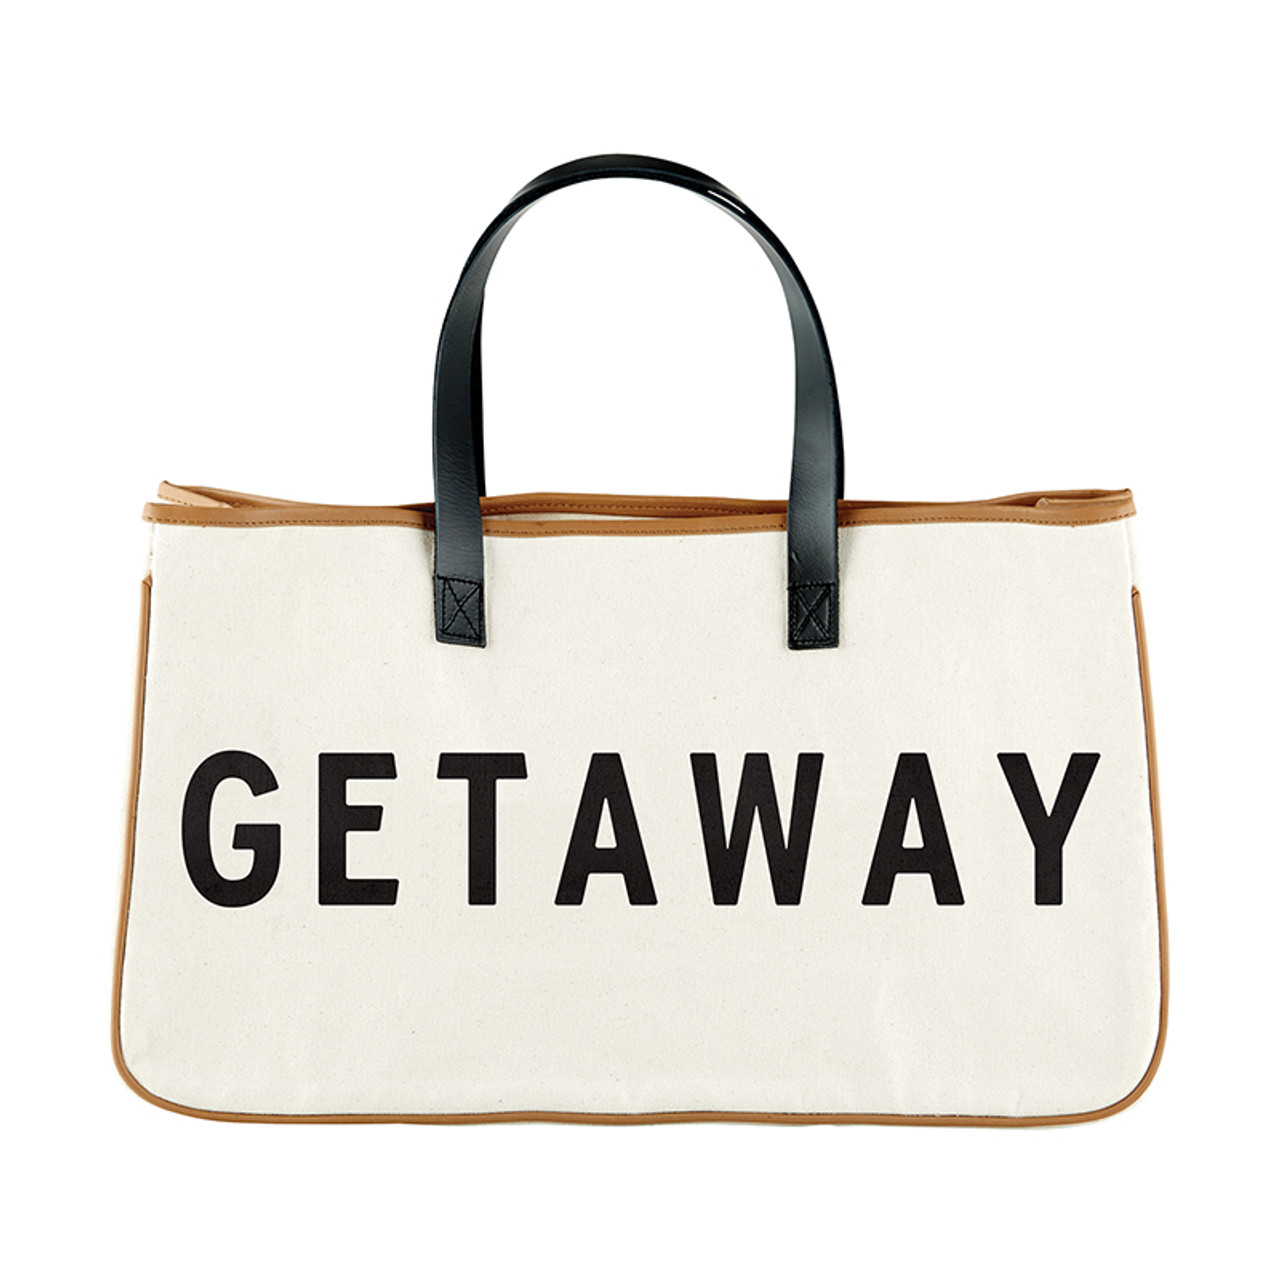 Getaway Bag